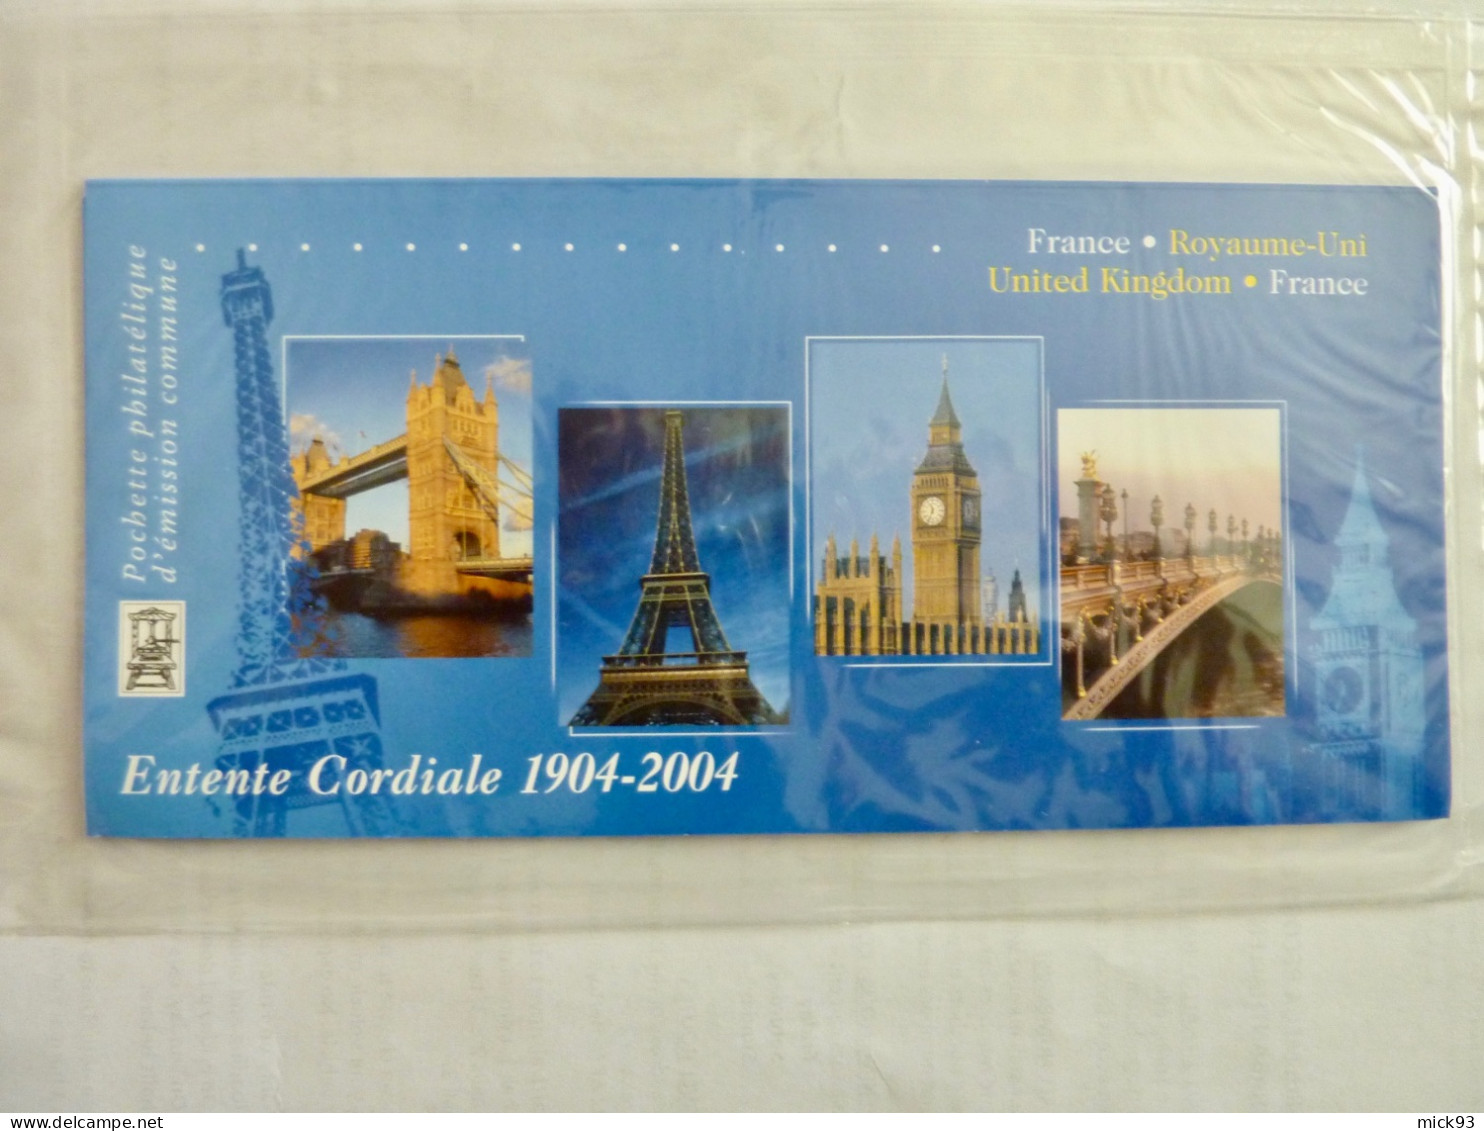 France Bloc émissions Communes France-Royaume Uni 2004 - Souvenir Blocks